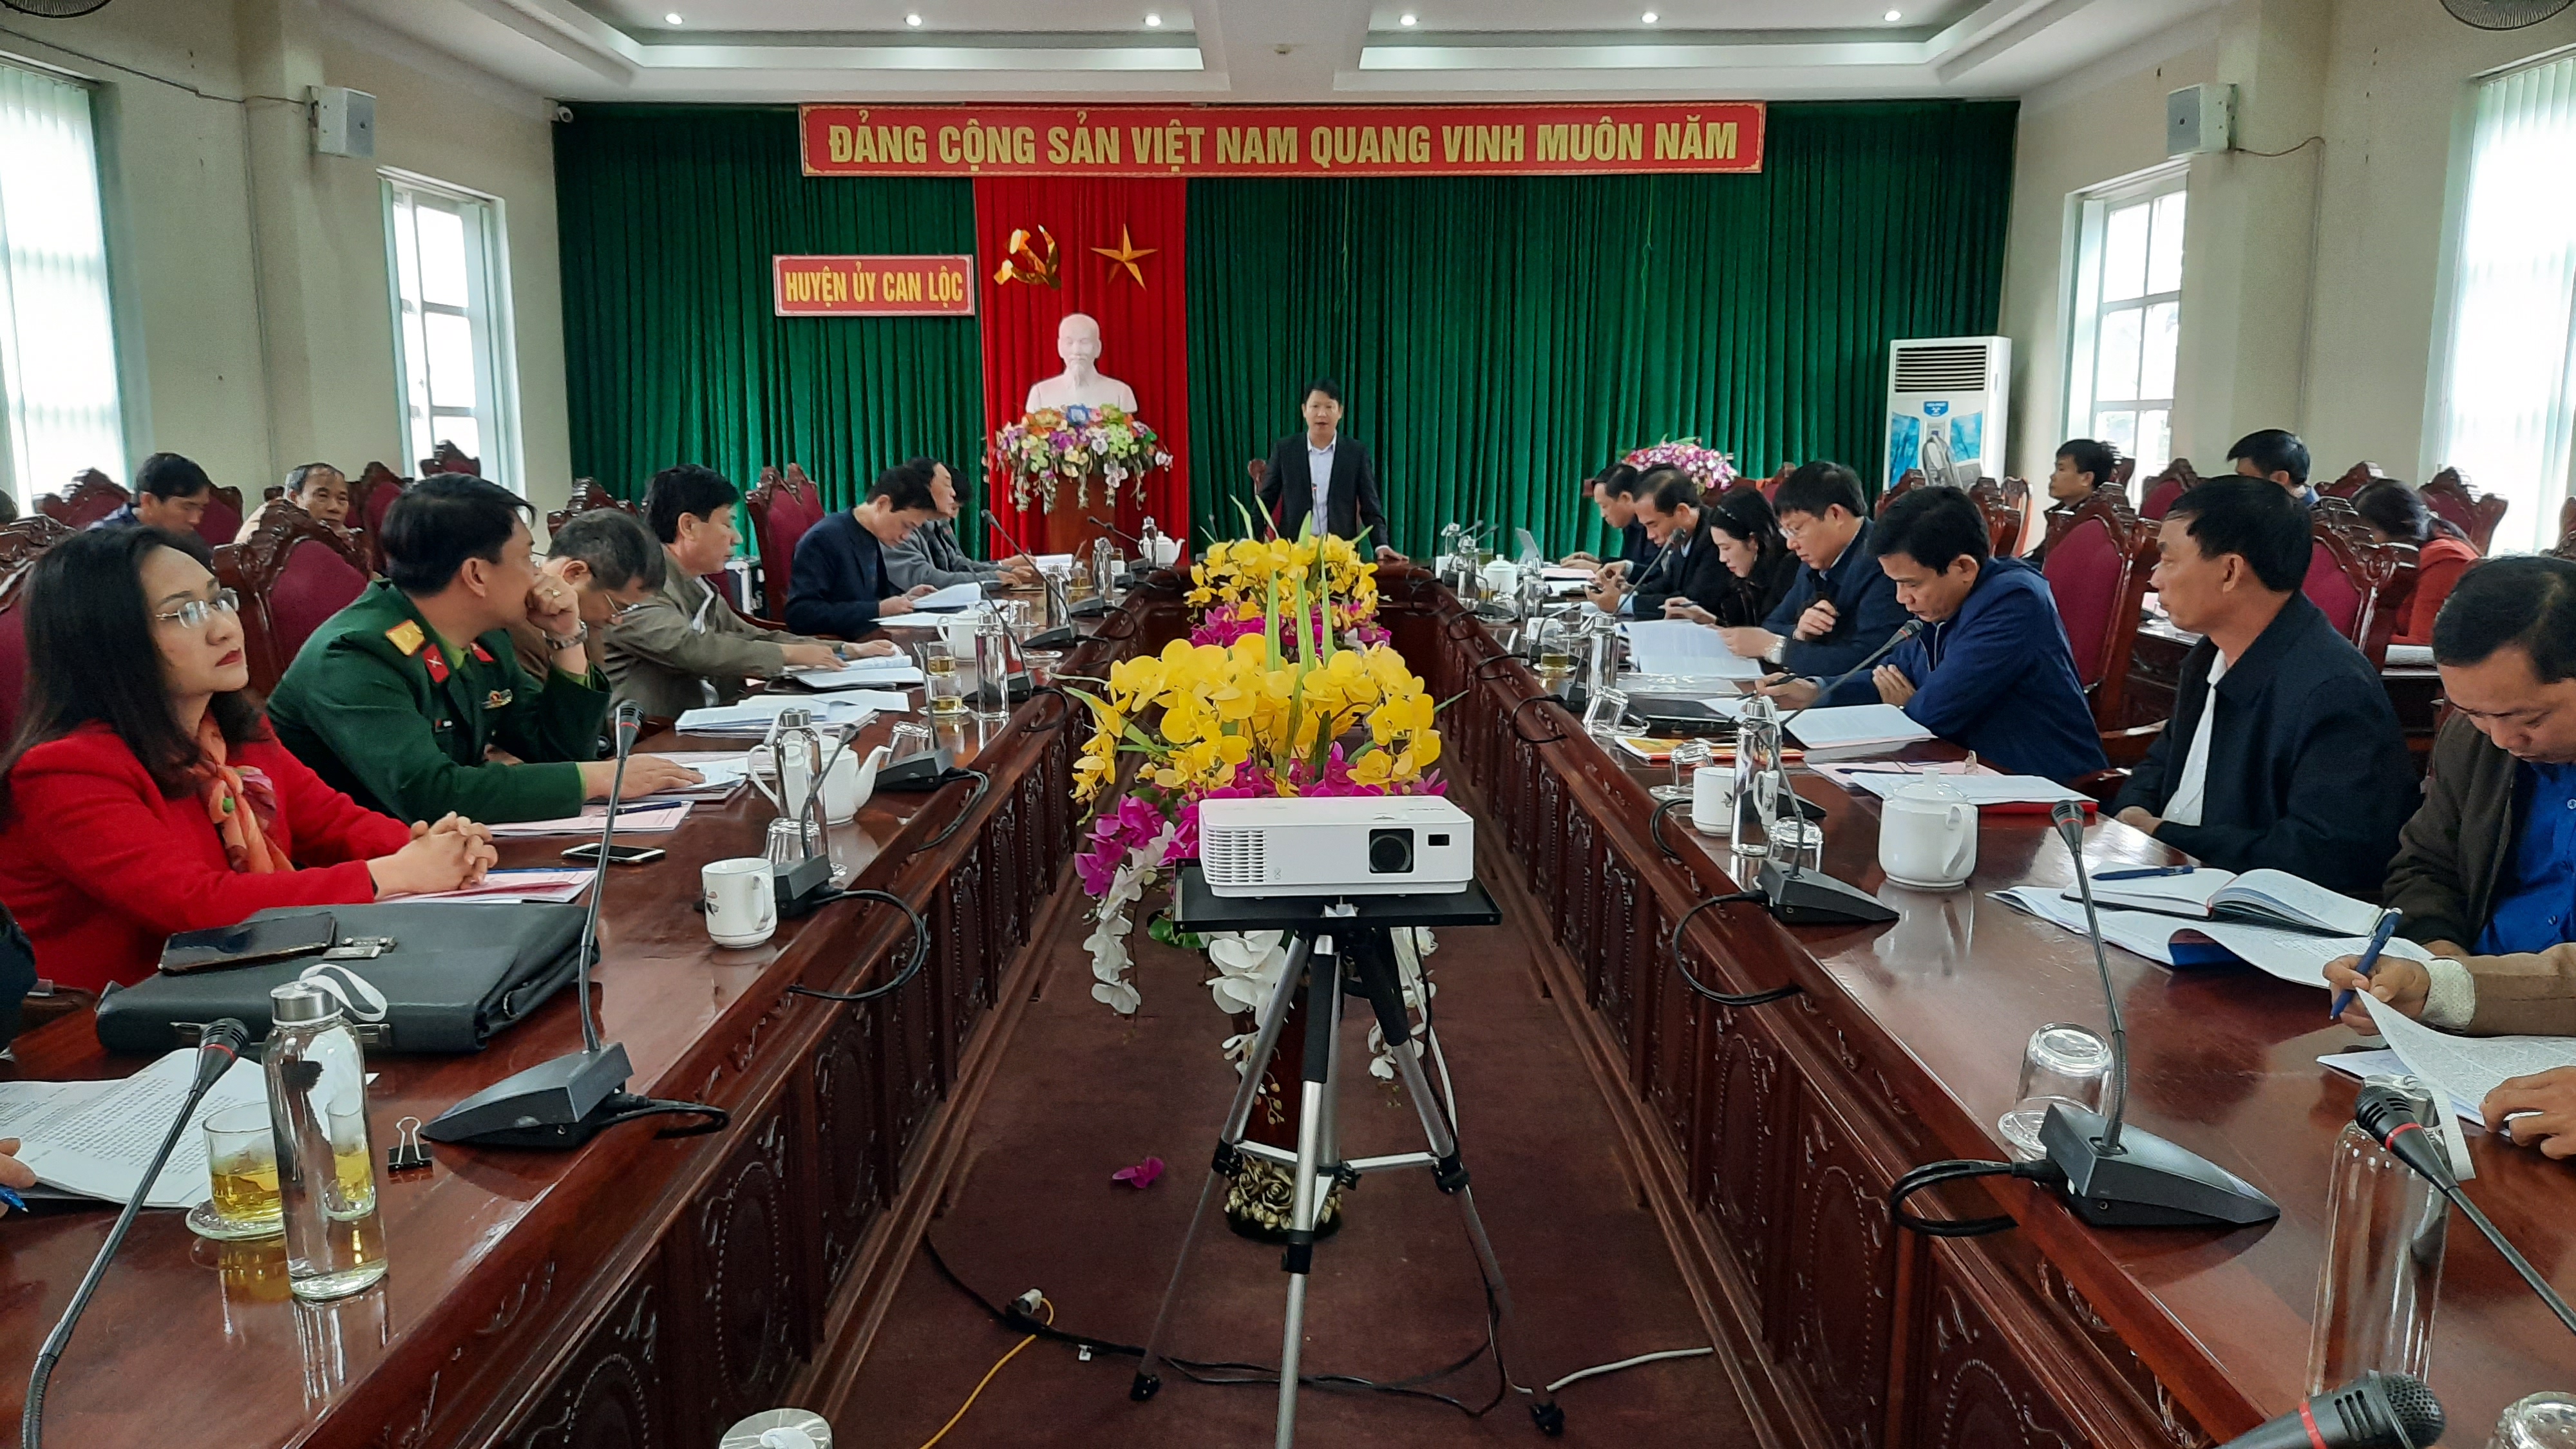 Đồng chí Phó Bí thư Thường trực Tỉnh ủy dự, chỉ đạo duyệt nội dung Đại hội điểm Đảng bộ xã Thượng Lộc nhiệm kỳ 2020 - 2025